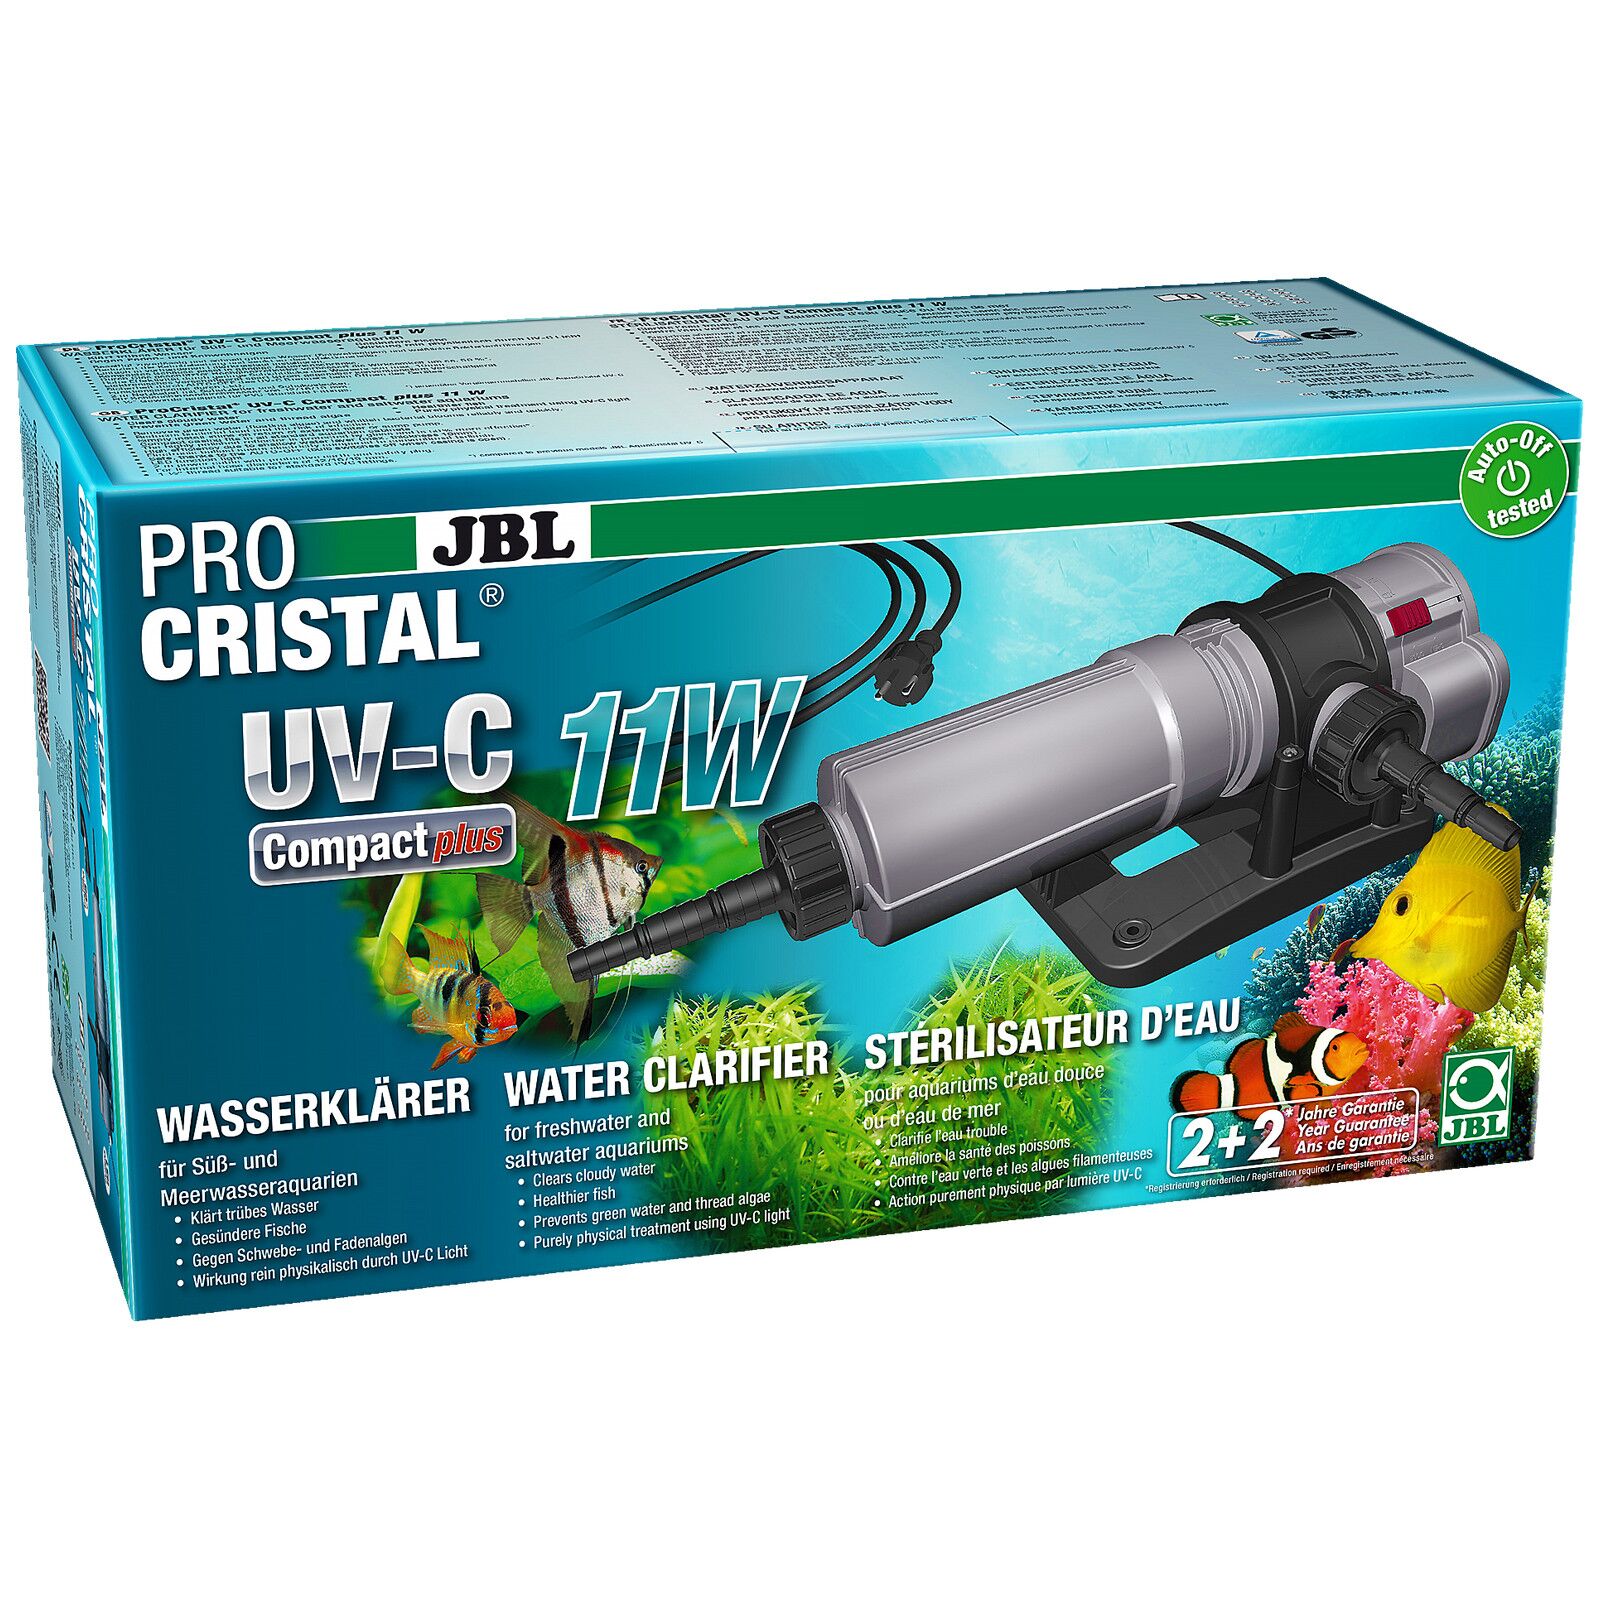 Mini UV led Aquael pour aquarium